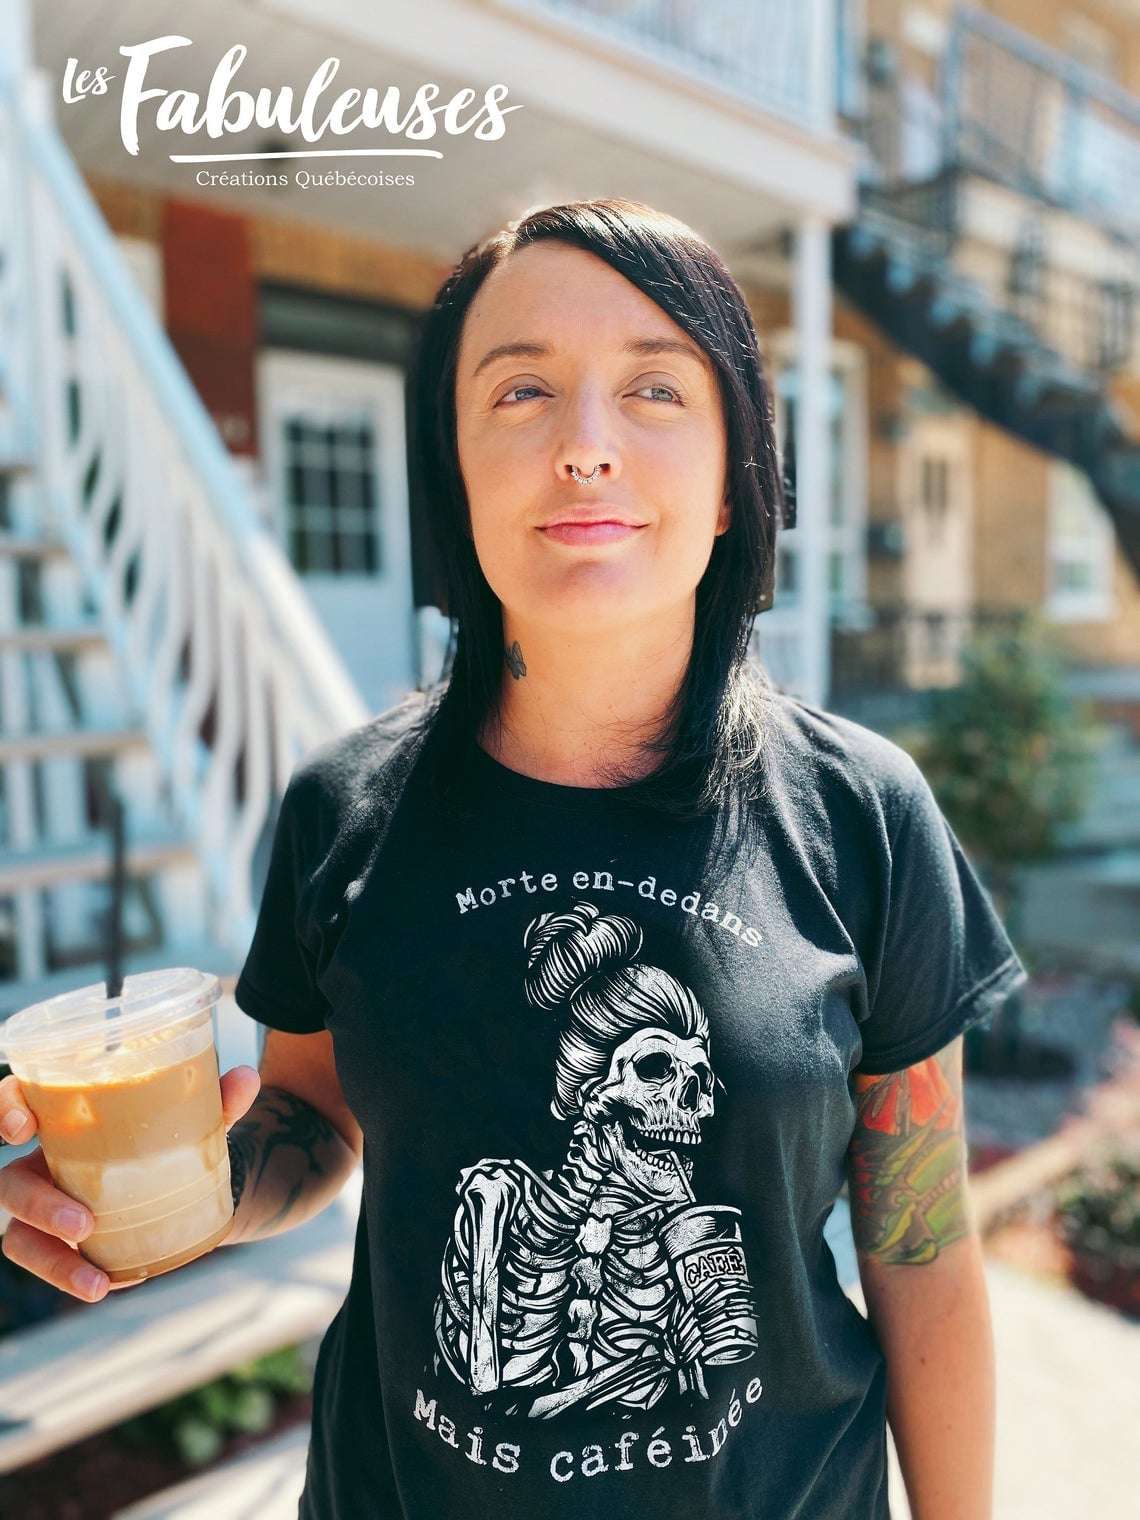 Skeleton Woman Drink Coffee - Morte en dedans mais cafe inee